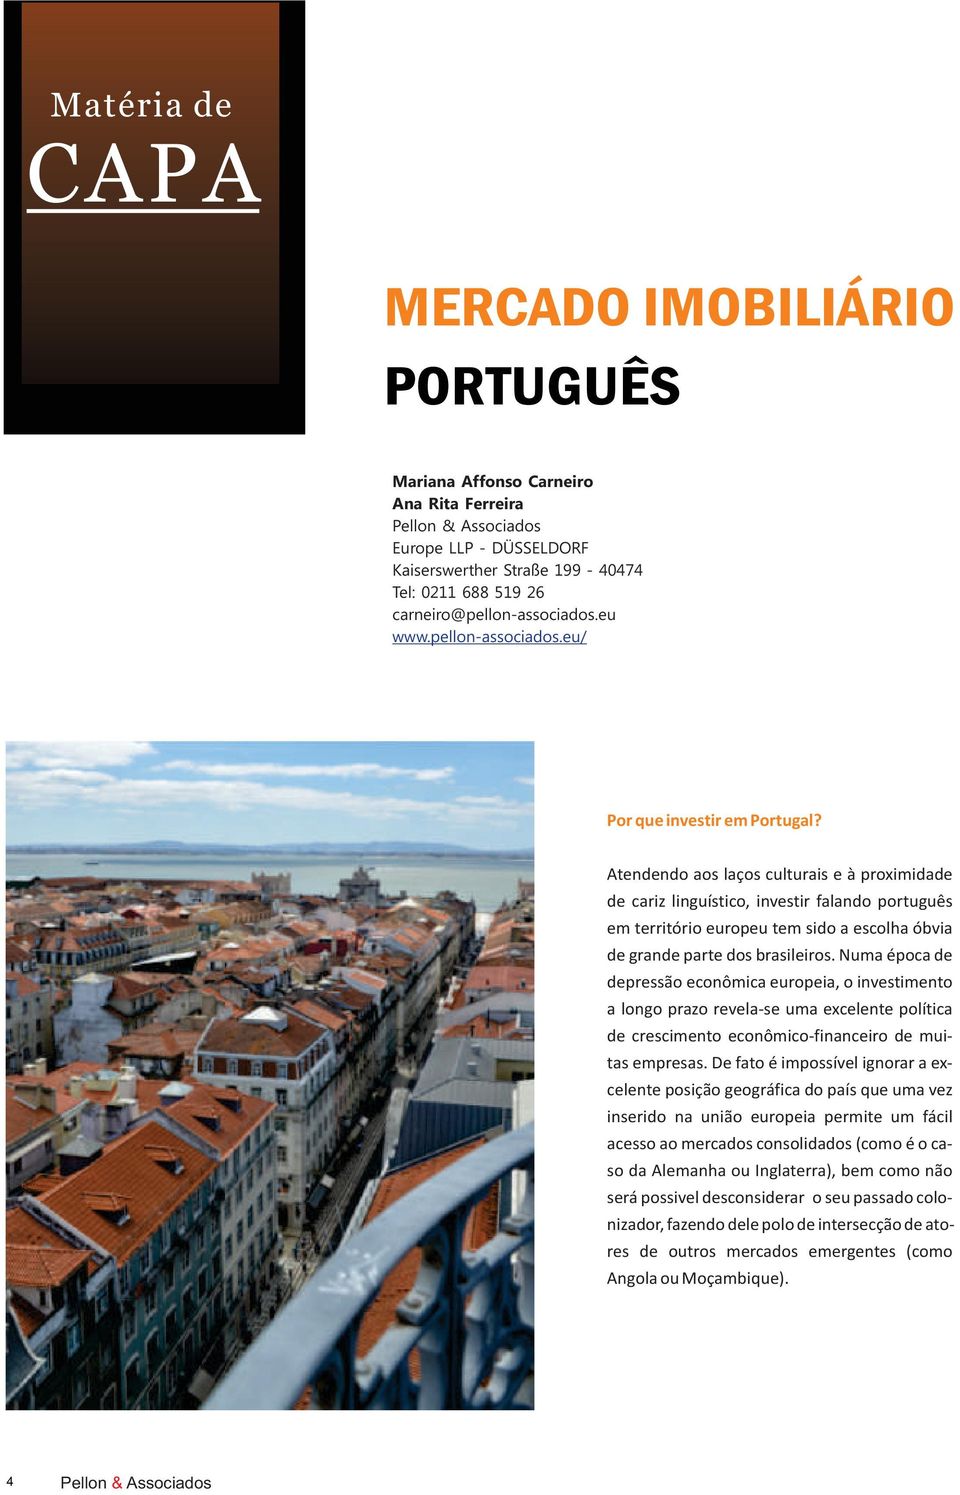 Atendendo aos laços culturais e à proximidade de cariz linguístico, investir falando português em território europeu tem sido a escolha óbvia de grande parte dos brasileiros.